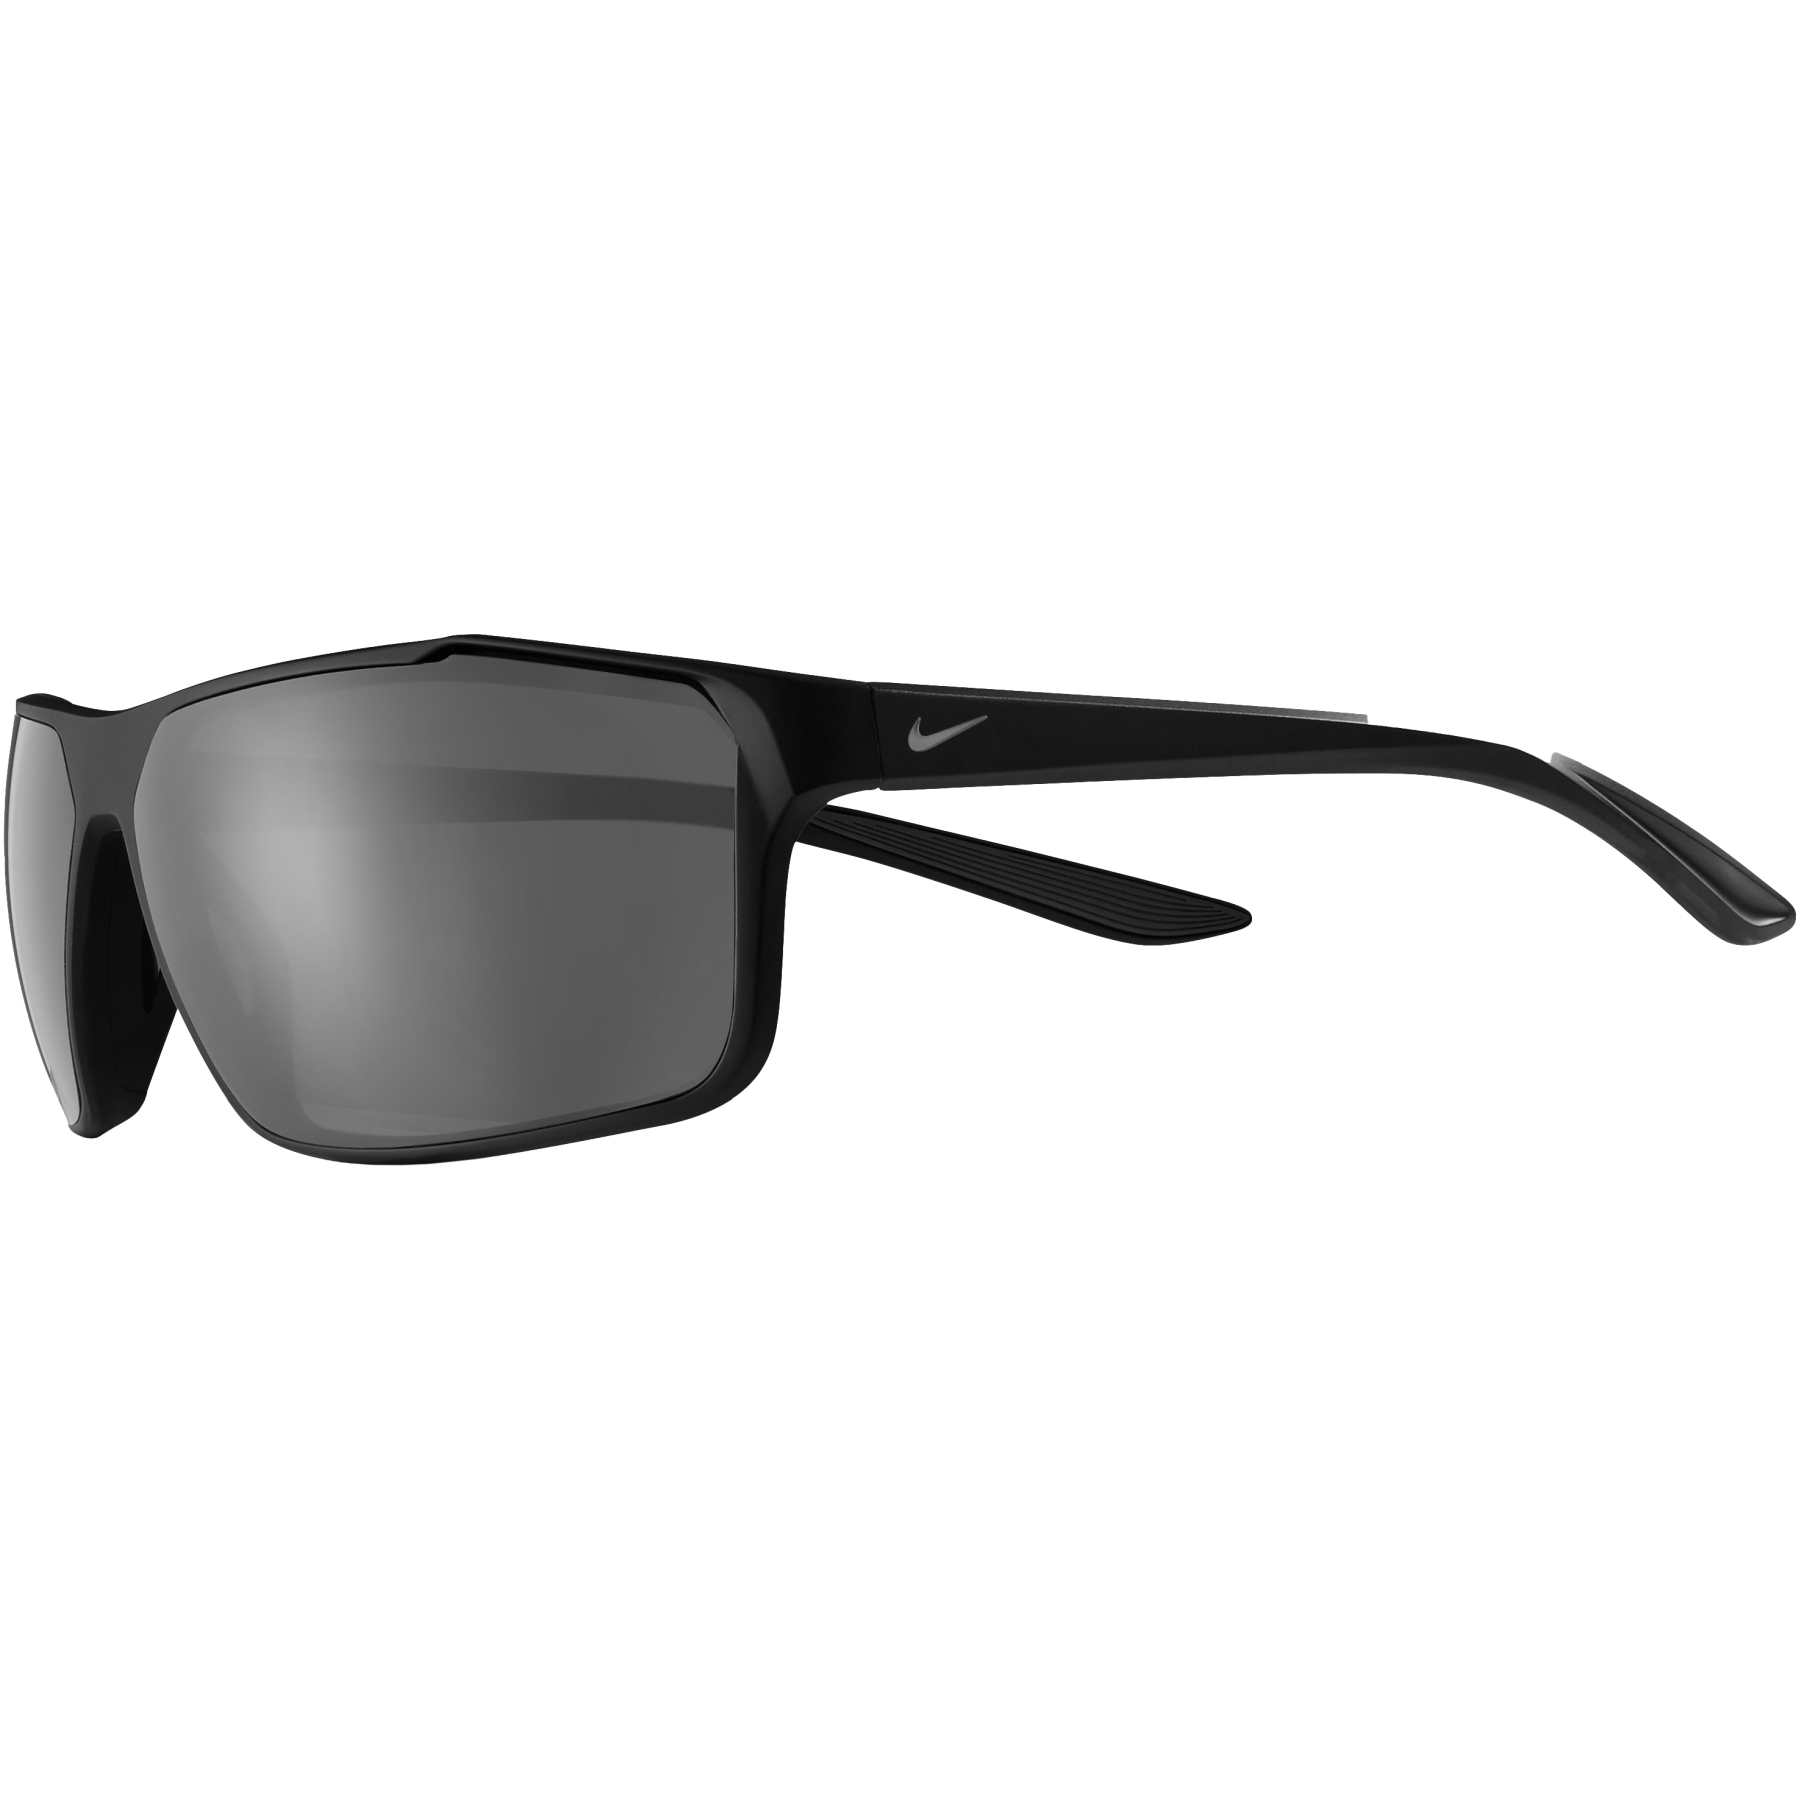 Produktbild von Nike Windstorm Sonnenbrille - matte black/cool grey | dark grey lens 6513010